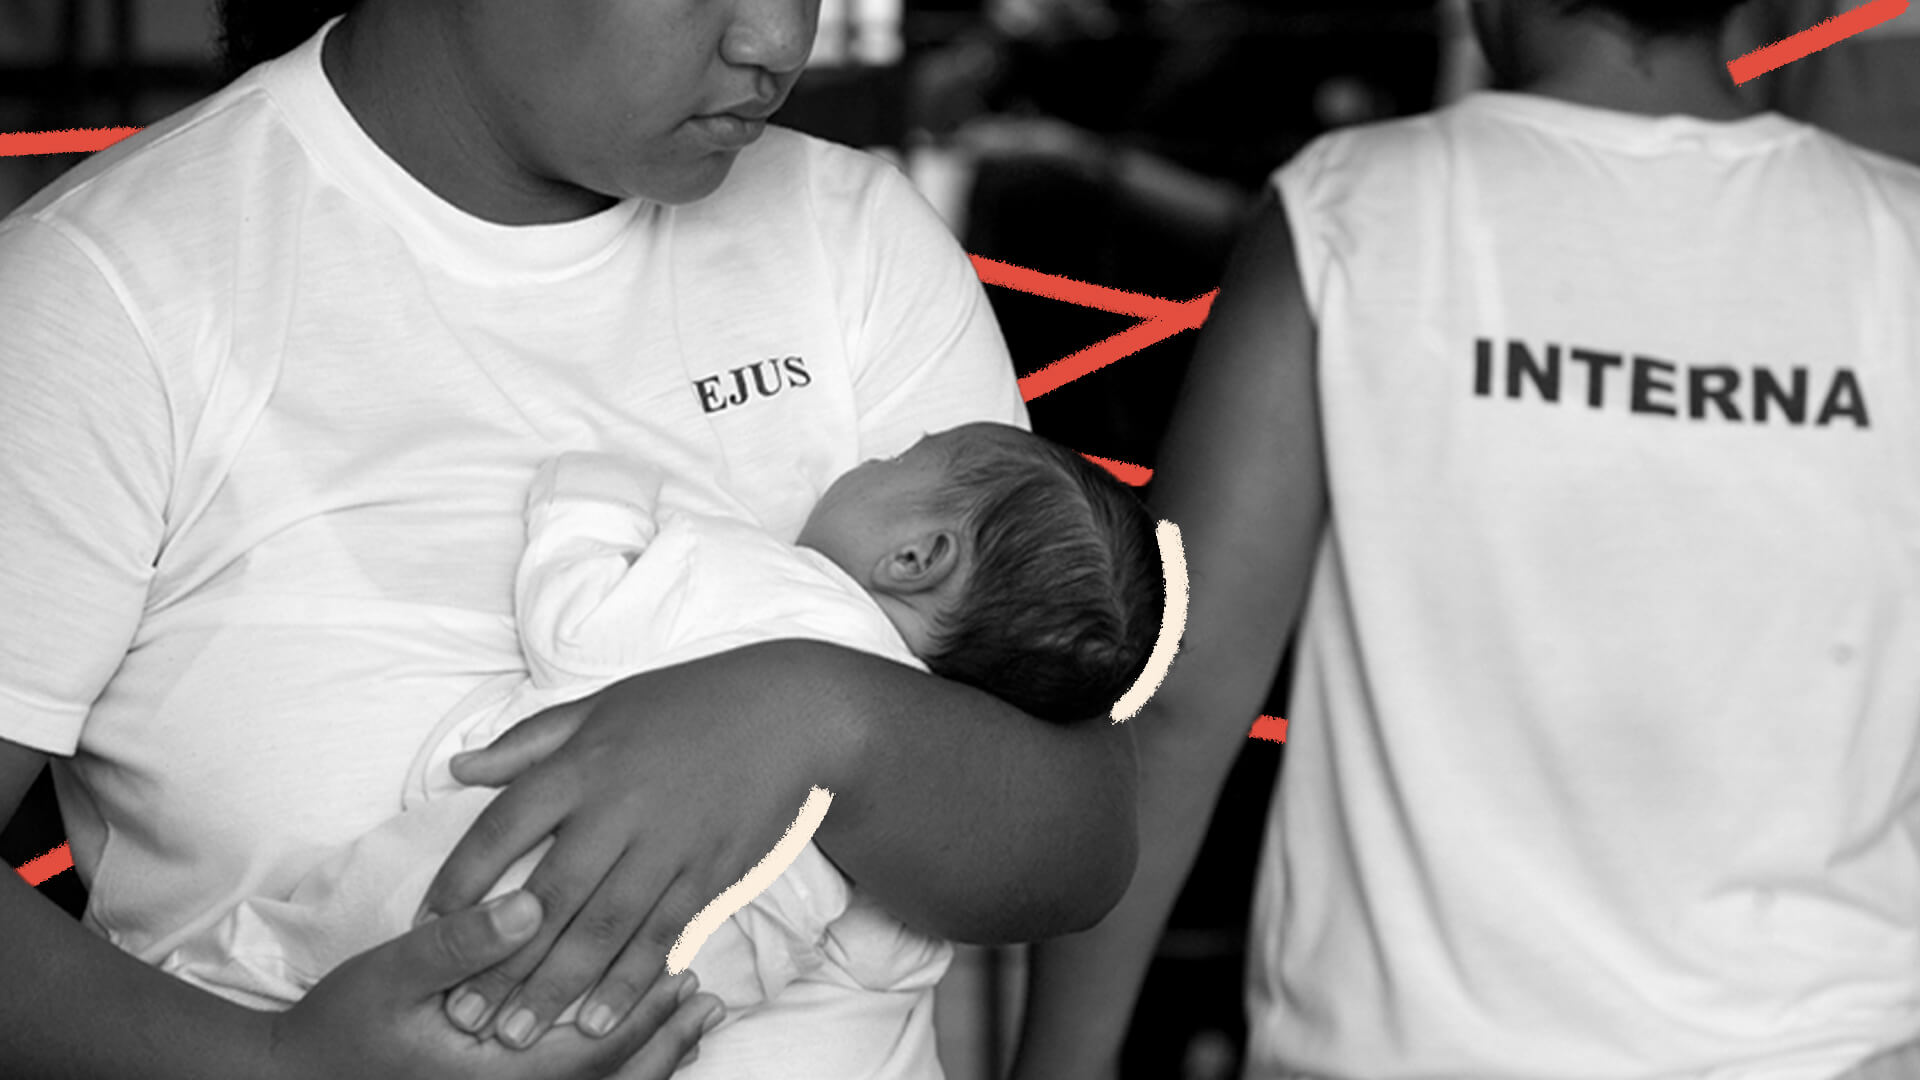 Como fica o direito à prisão domiciliar de mães encarceradas?. Imagem em preto e branco mostra uma mãe, negra, segurando um bebê no colo. A foto possui intervenções de rabiscos coloridos na cor vermelha.